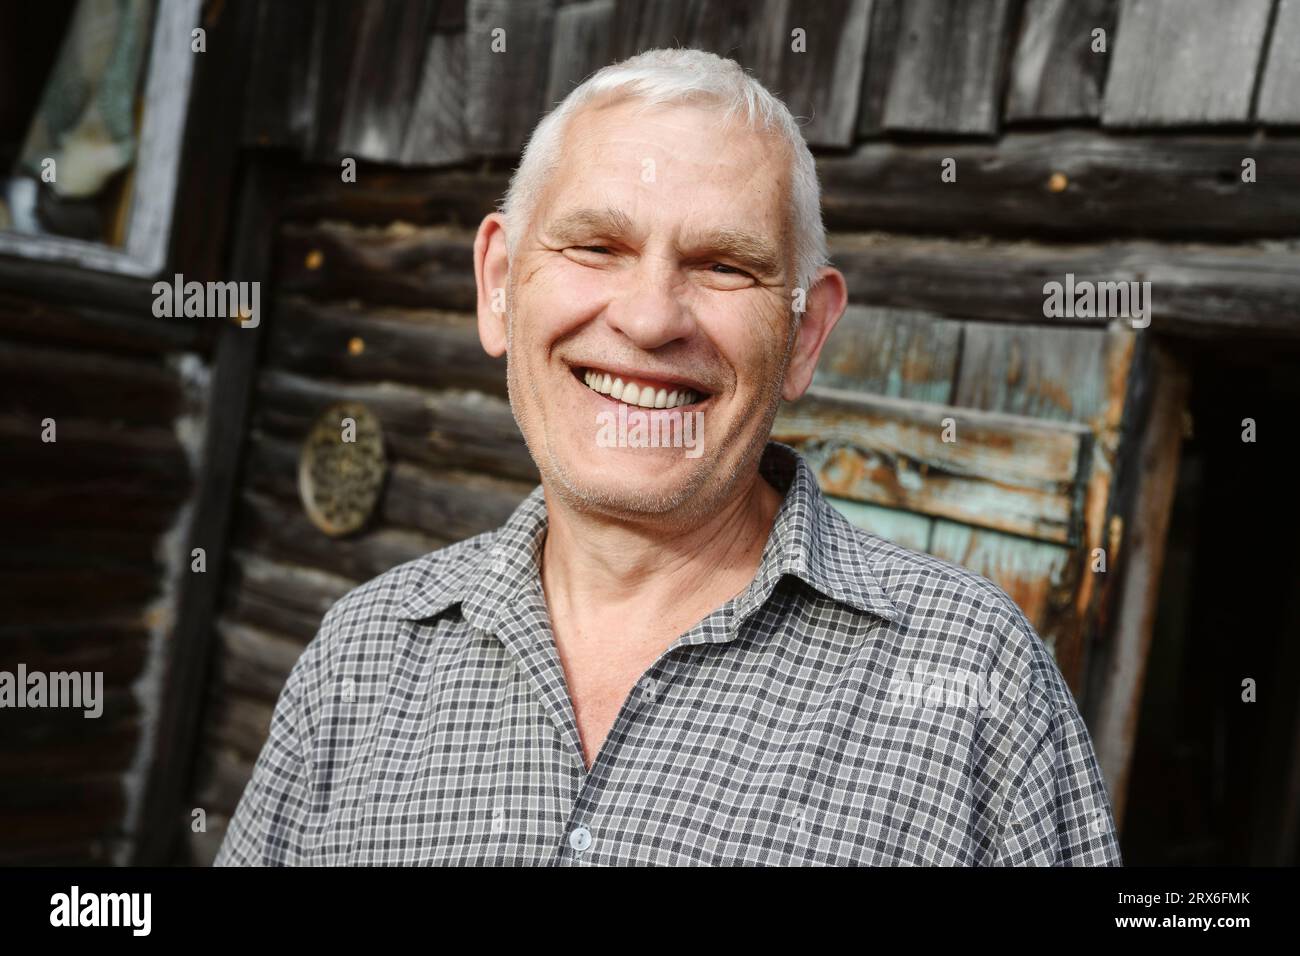 Happy senior man with gray hair Stock Photo